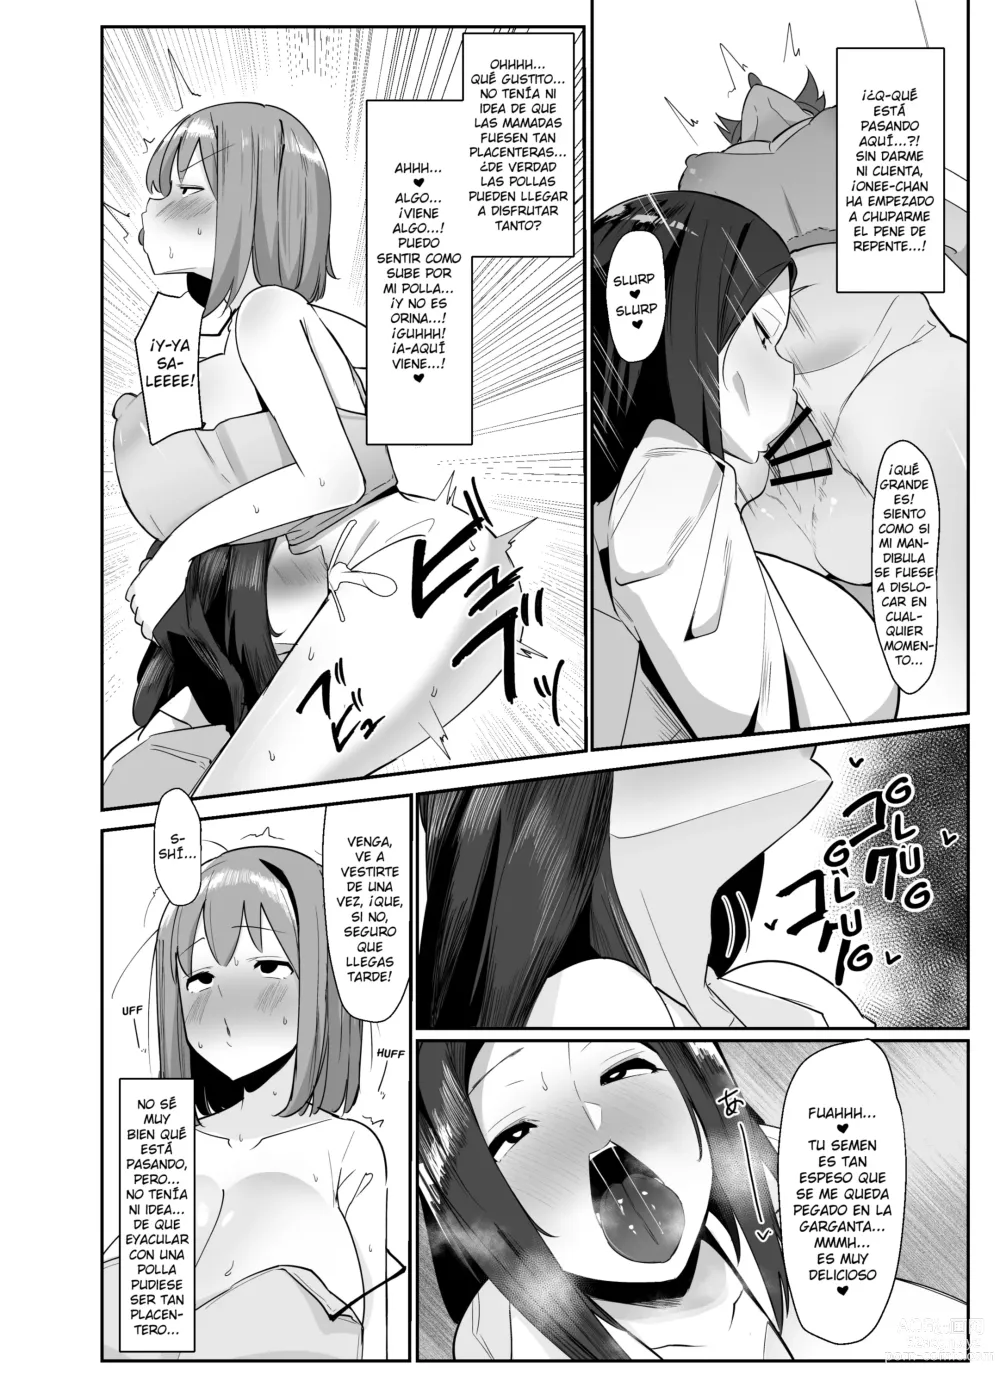 Page 5 of doujinshi ¡Un día me desperté y de repente hacer eyacular a las futanaris era lo más normal del mundo!